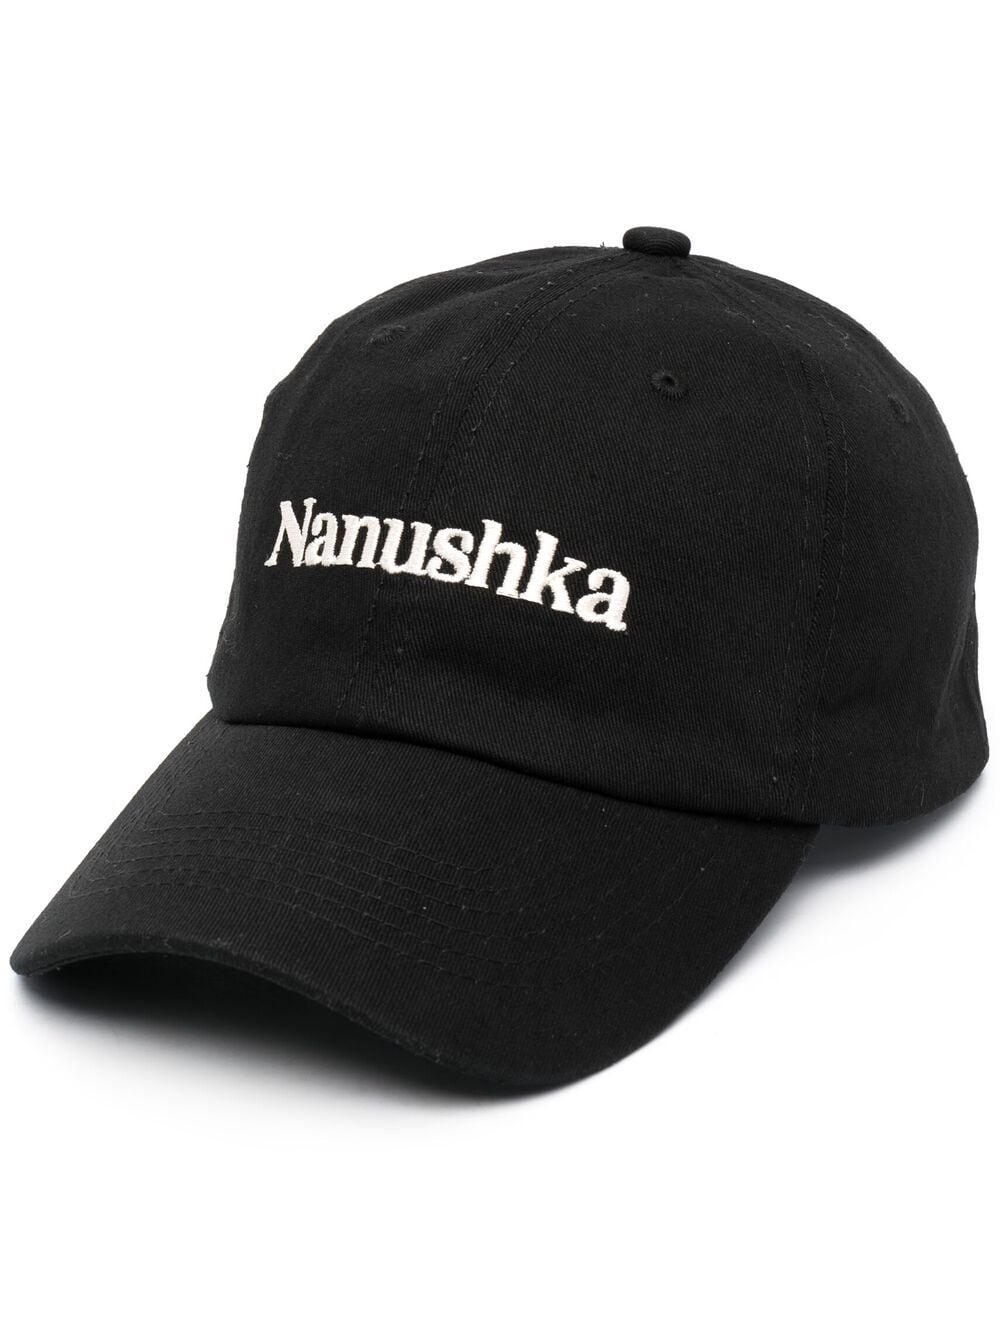 фото Nanushka кепка с логотипом